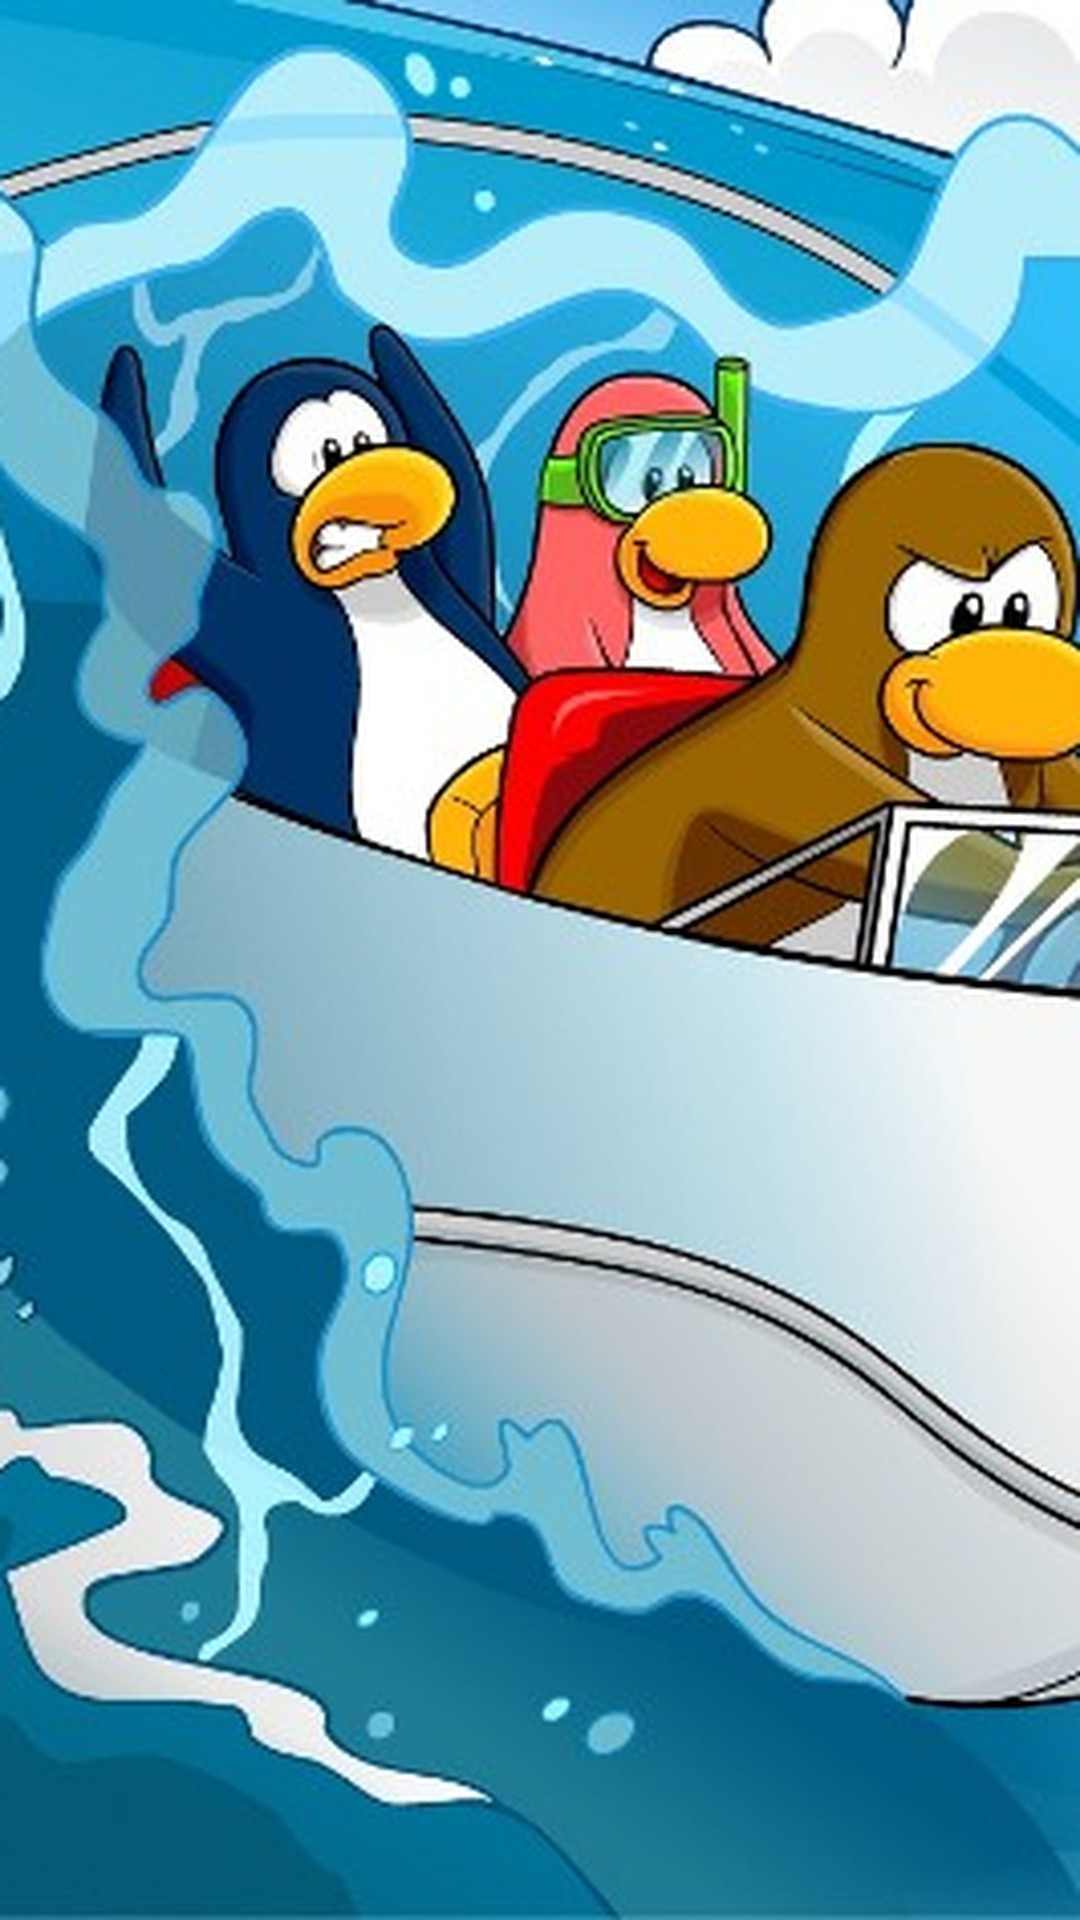 Club Penguin Premium  Sua antiga fonte de informações sobre o jogo Club  Penguin no Brasil: Notebook do Club Penguin no Click Jogos!